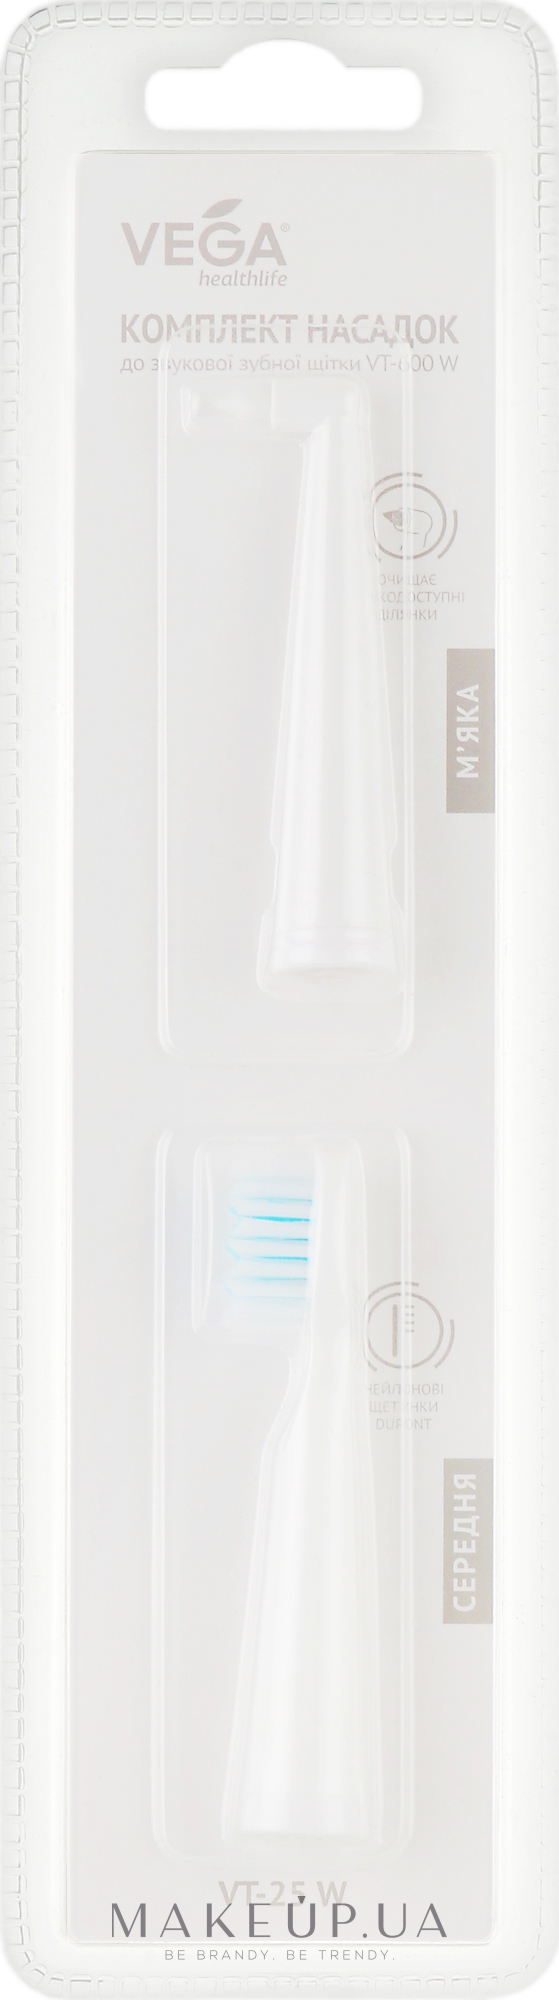 Сменная насадка для электрической зубной щетки, VT-600W, белая - Vega — фото 2шт